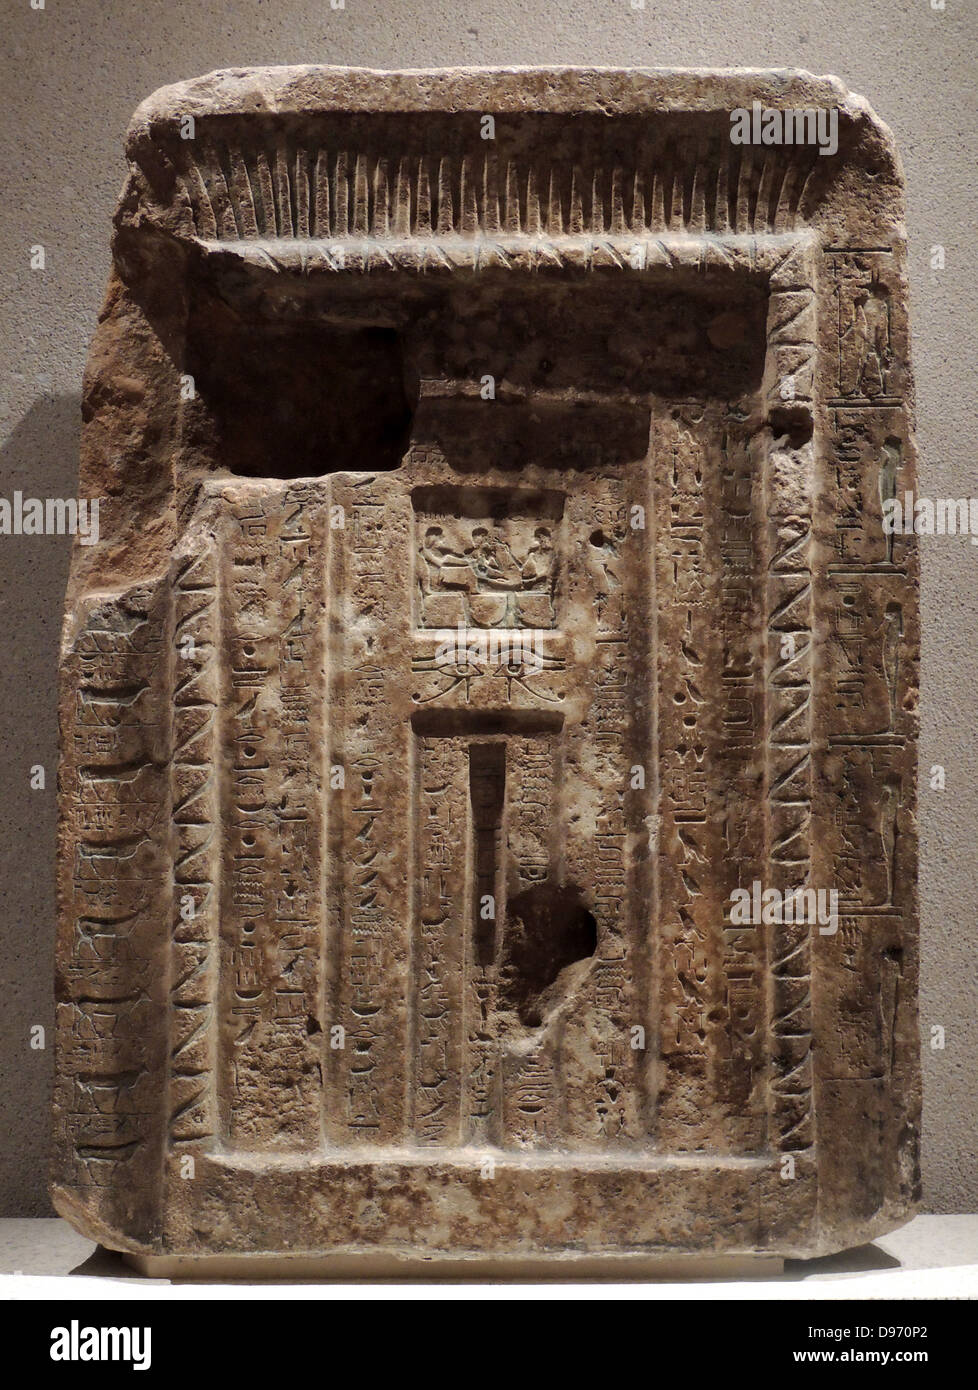 Fausse Porte de Senemut intendant de la reine Hatshepsout xviiième dynastie, 1480-1460BC Thèbes, Egypte Banque D'Images